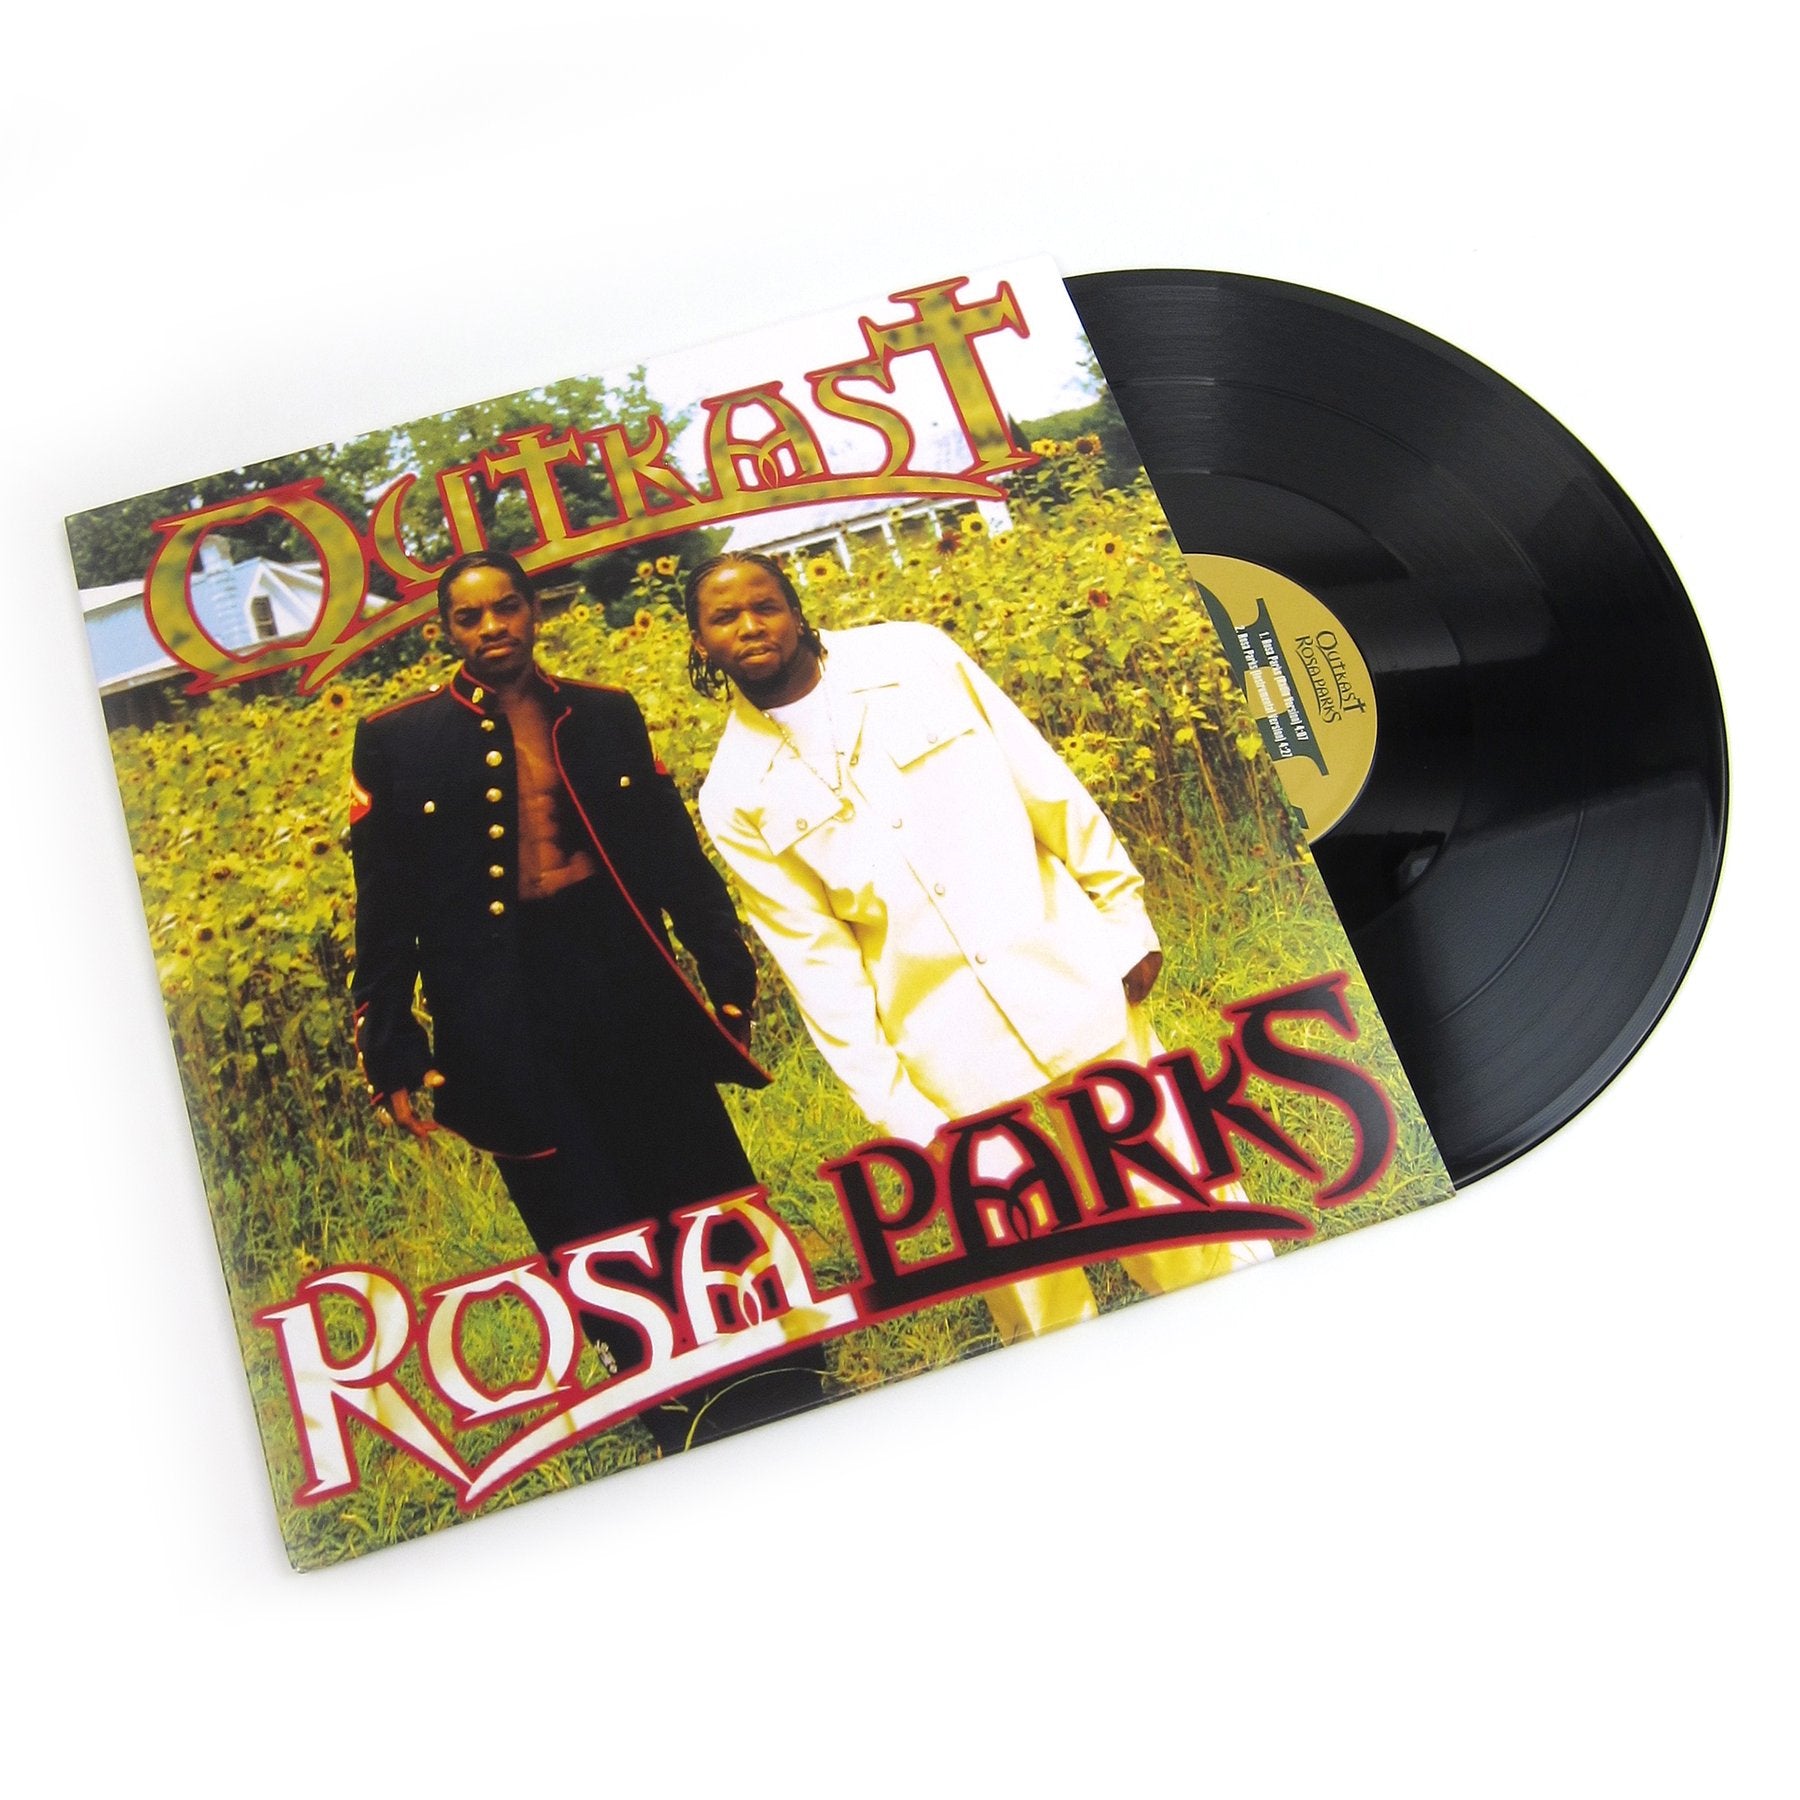 OutKast - Rosa Parks: Edición Especial [RBF18]